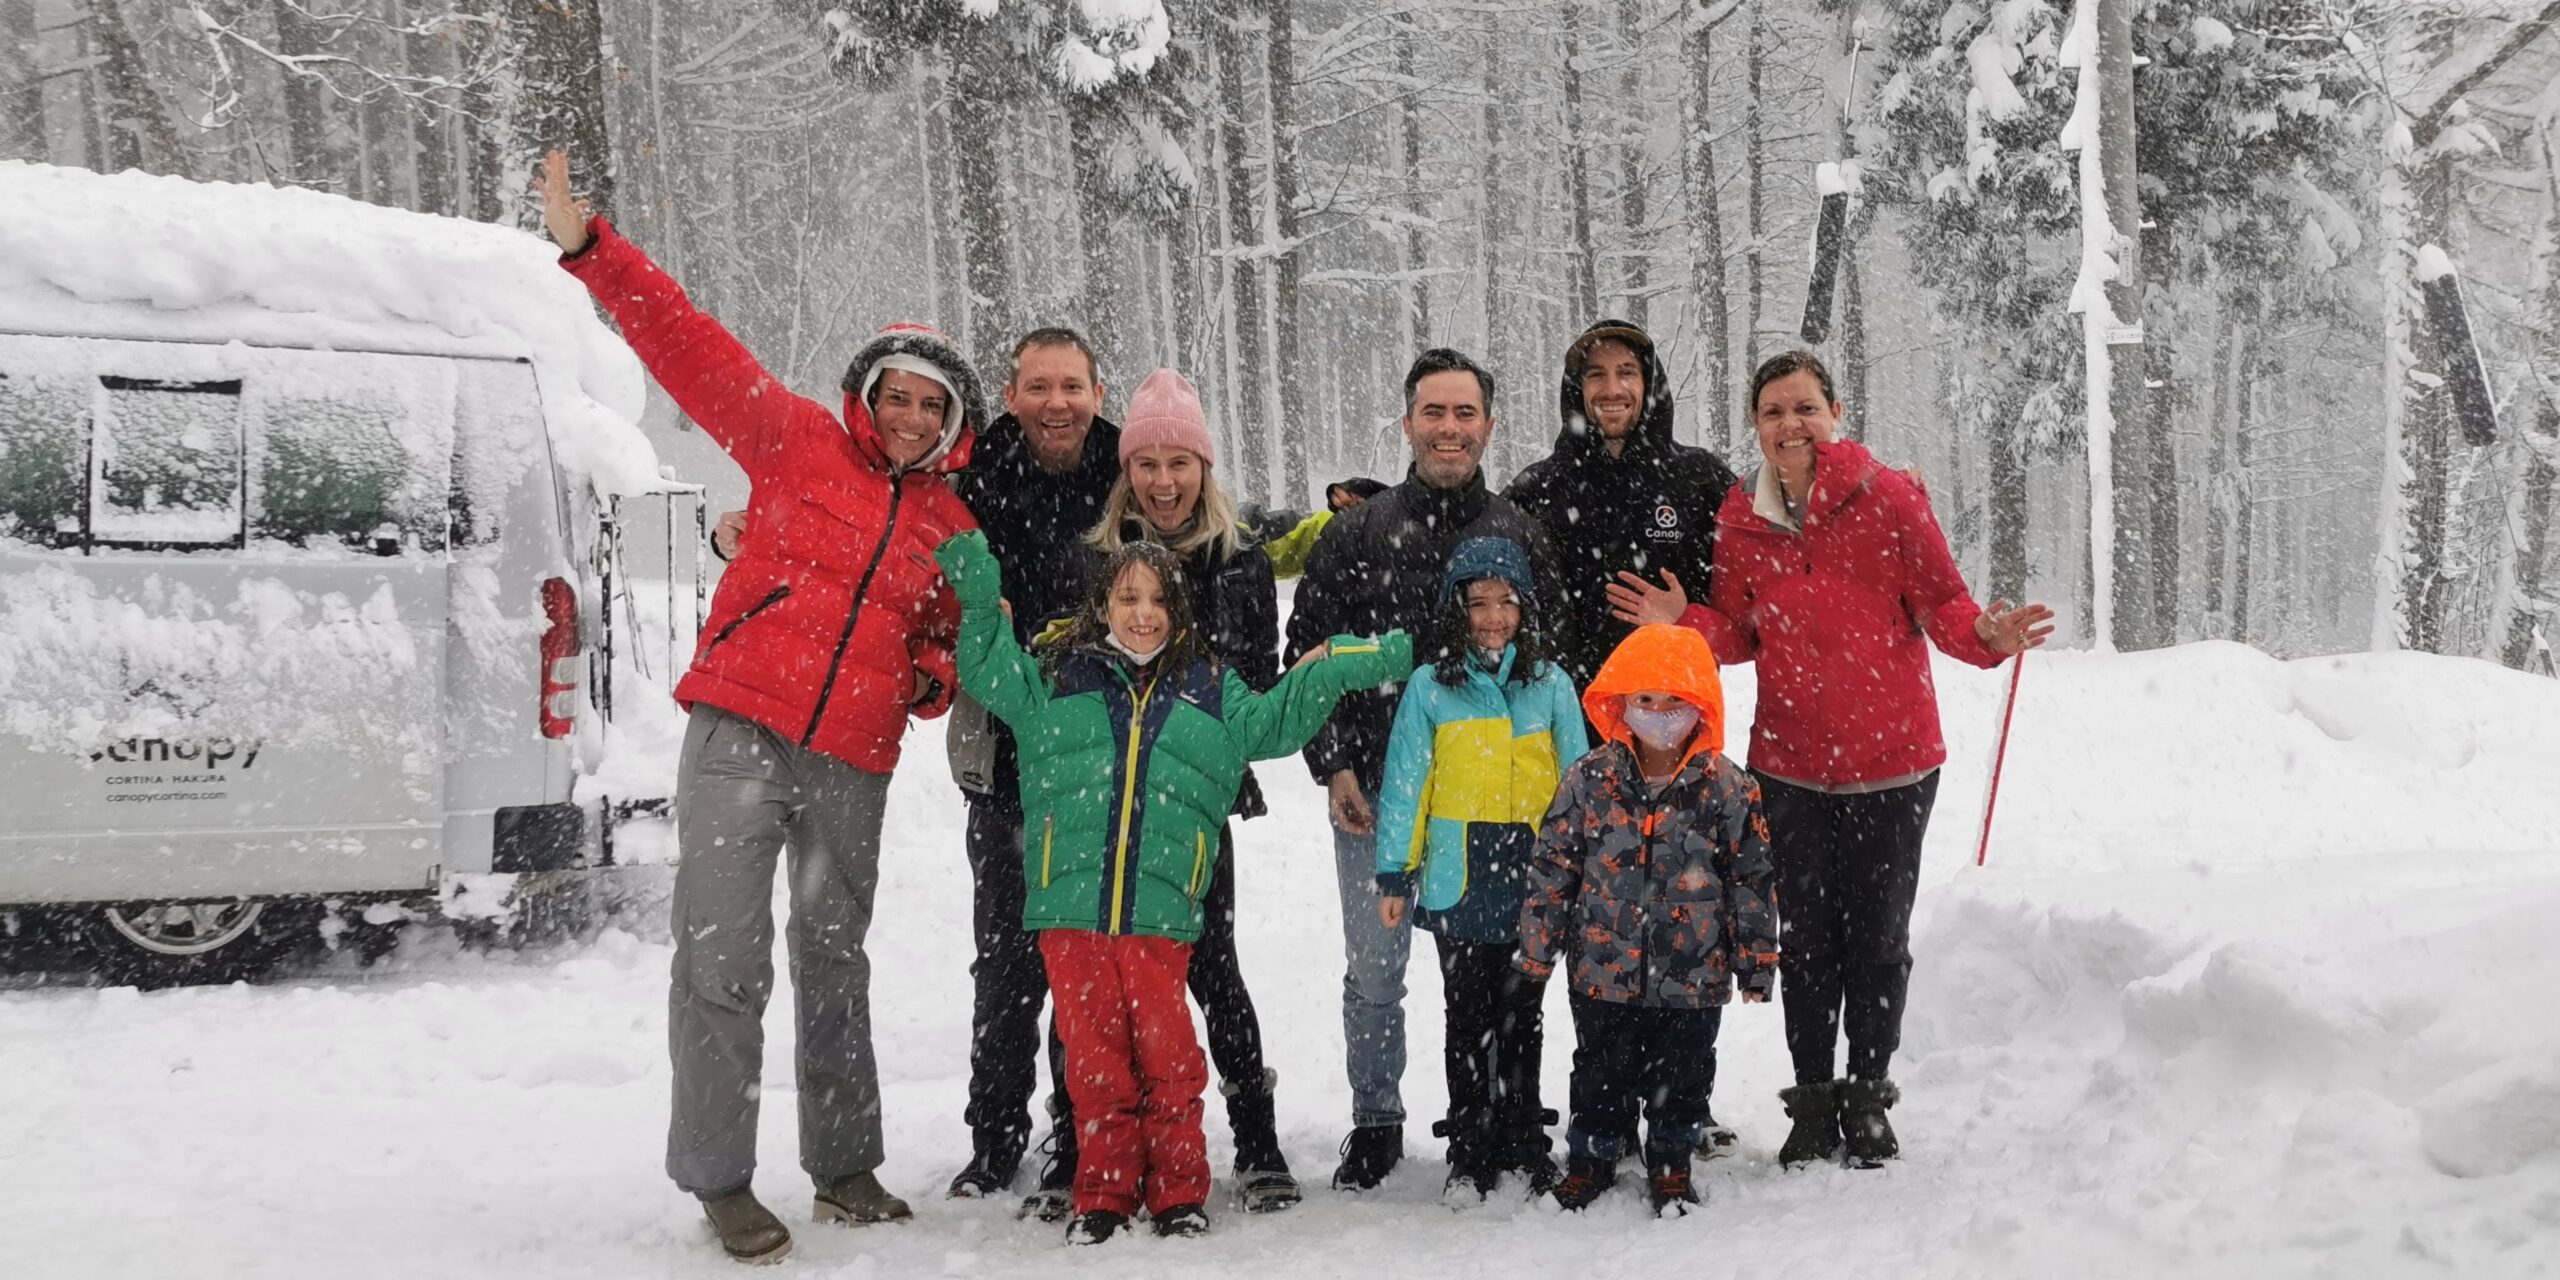 holiday in hakuba - family enjoying the snow